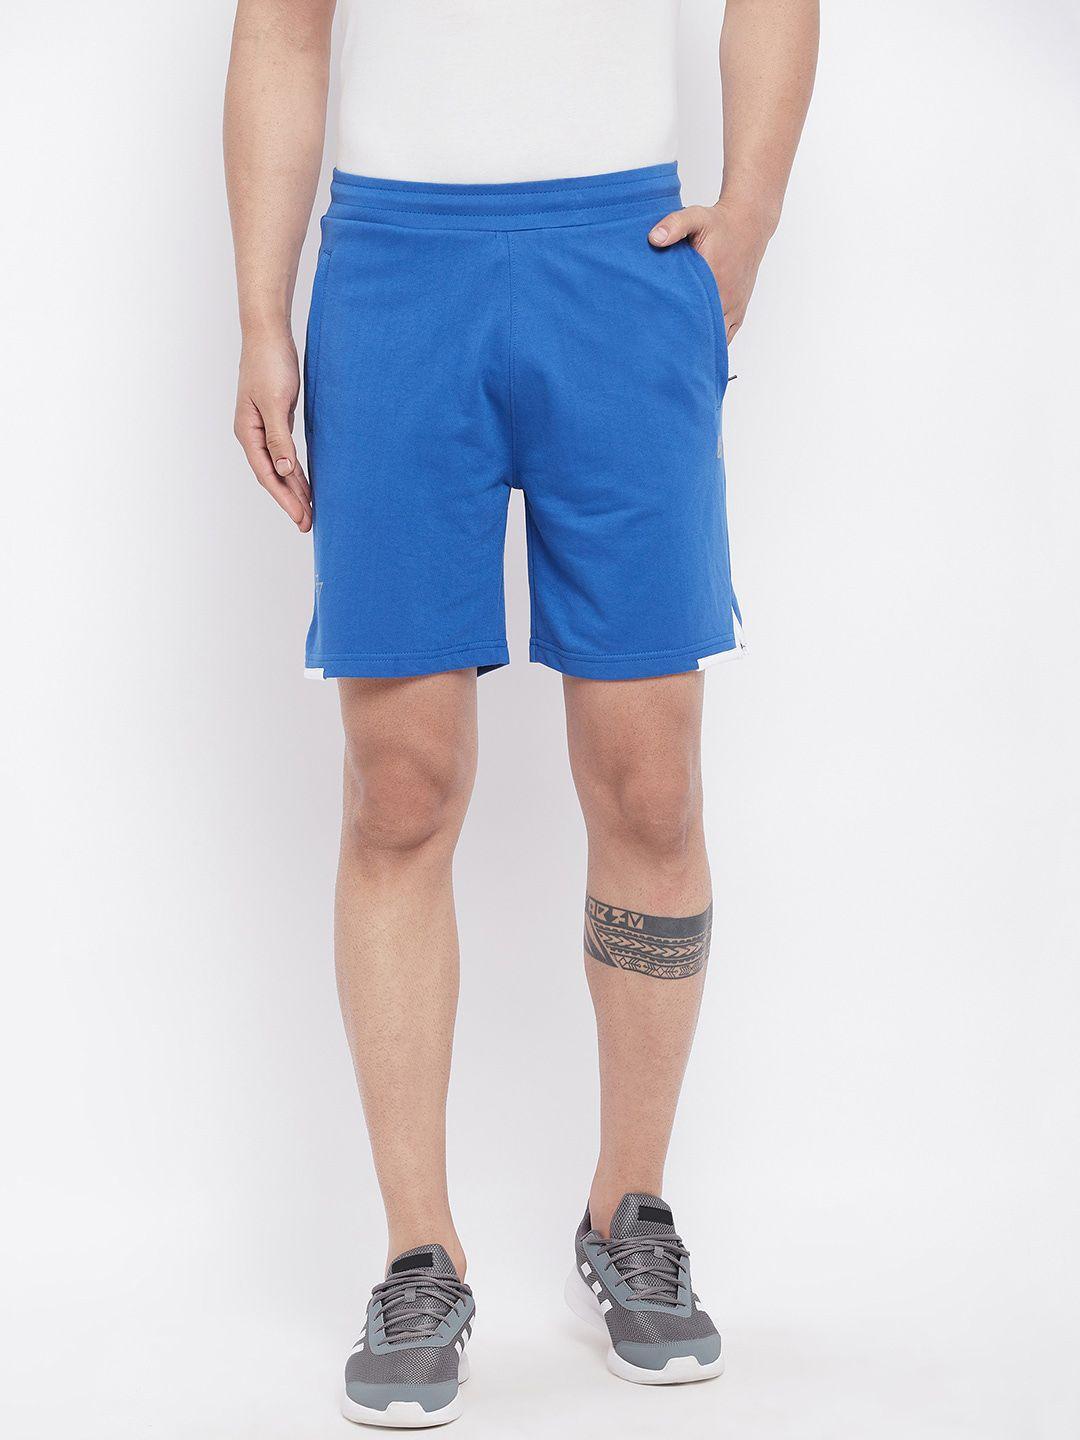 unpar men blue outdoor cotton sports shorts